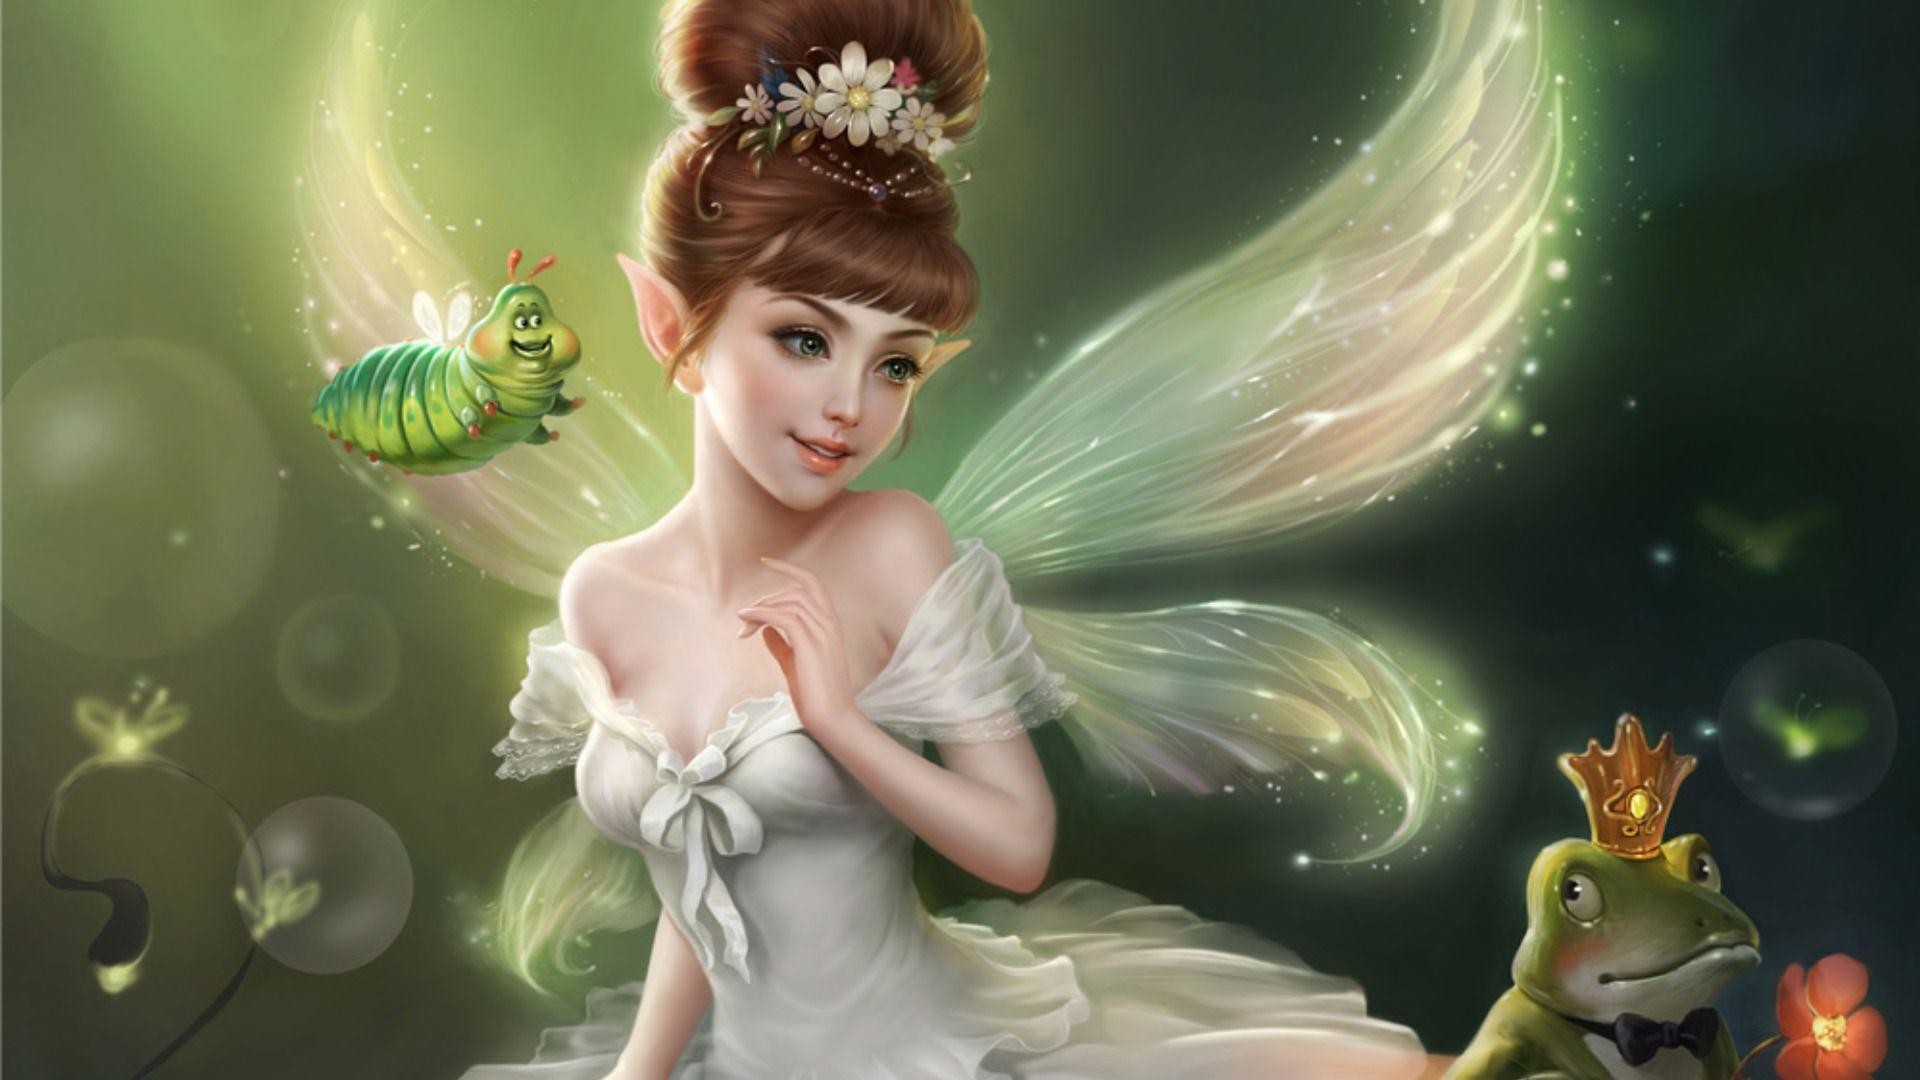 Pretty Fairy Wallpaper Image